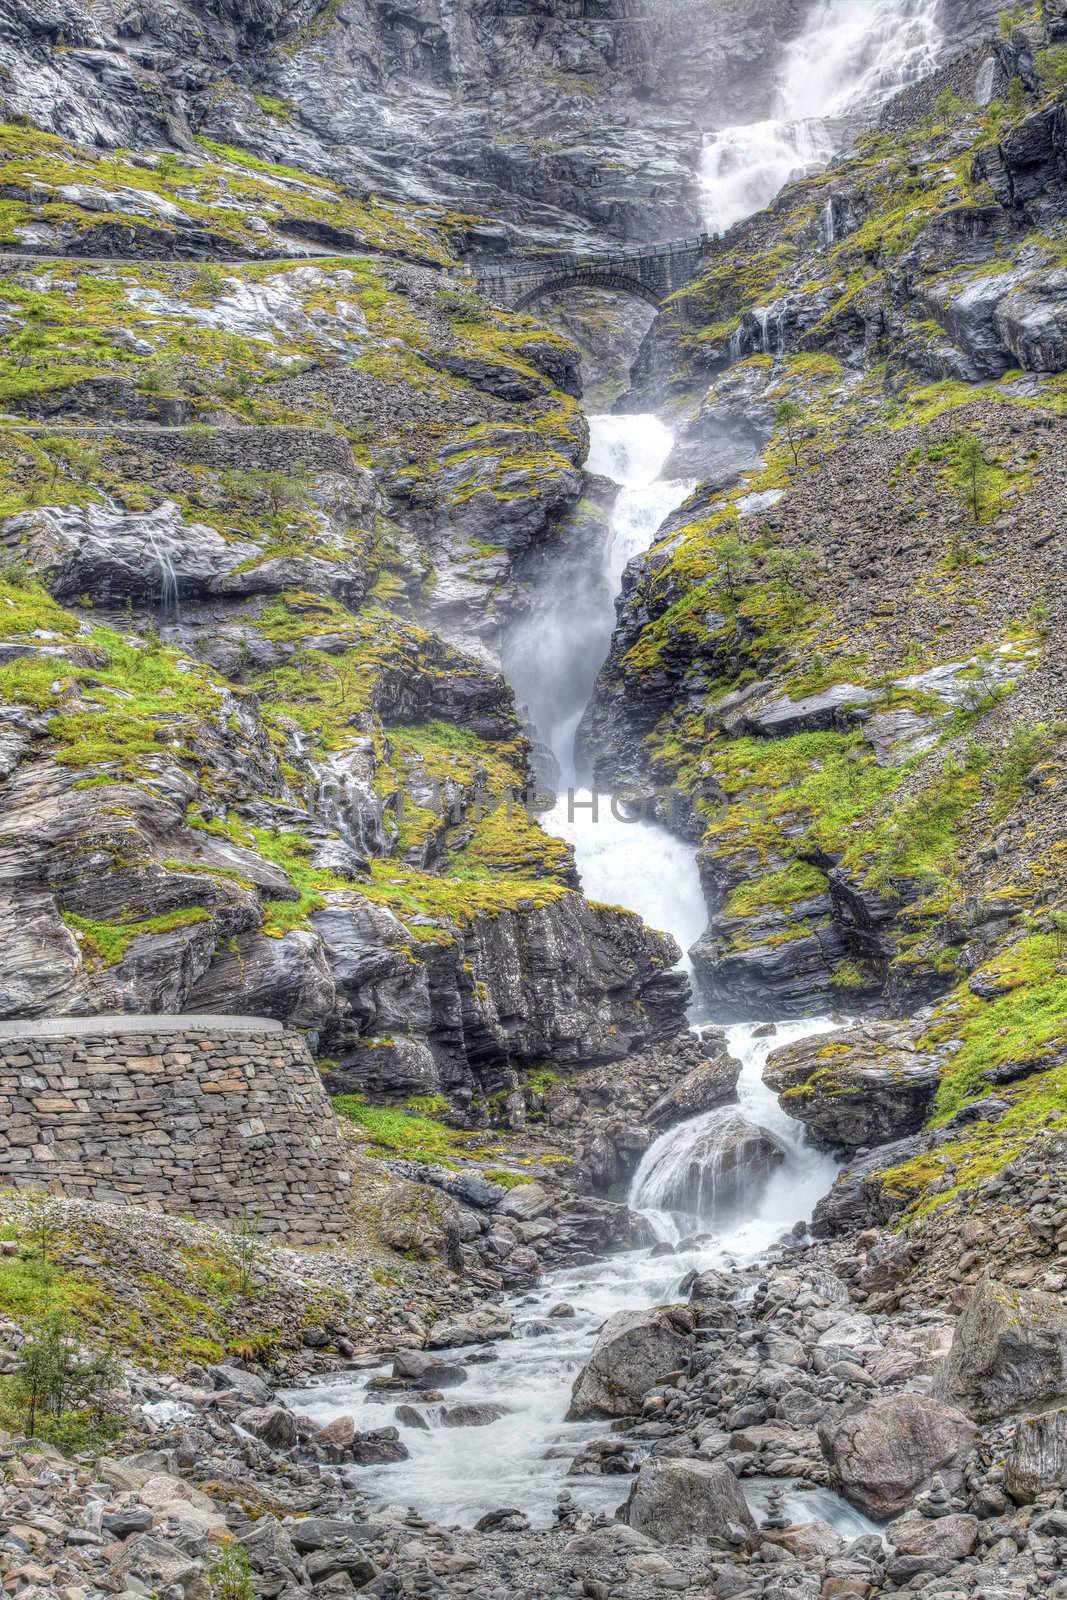 Trollstigen in Norway by kjorgen